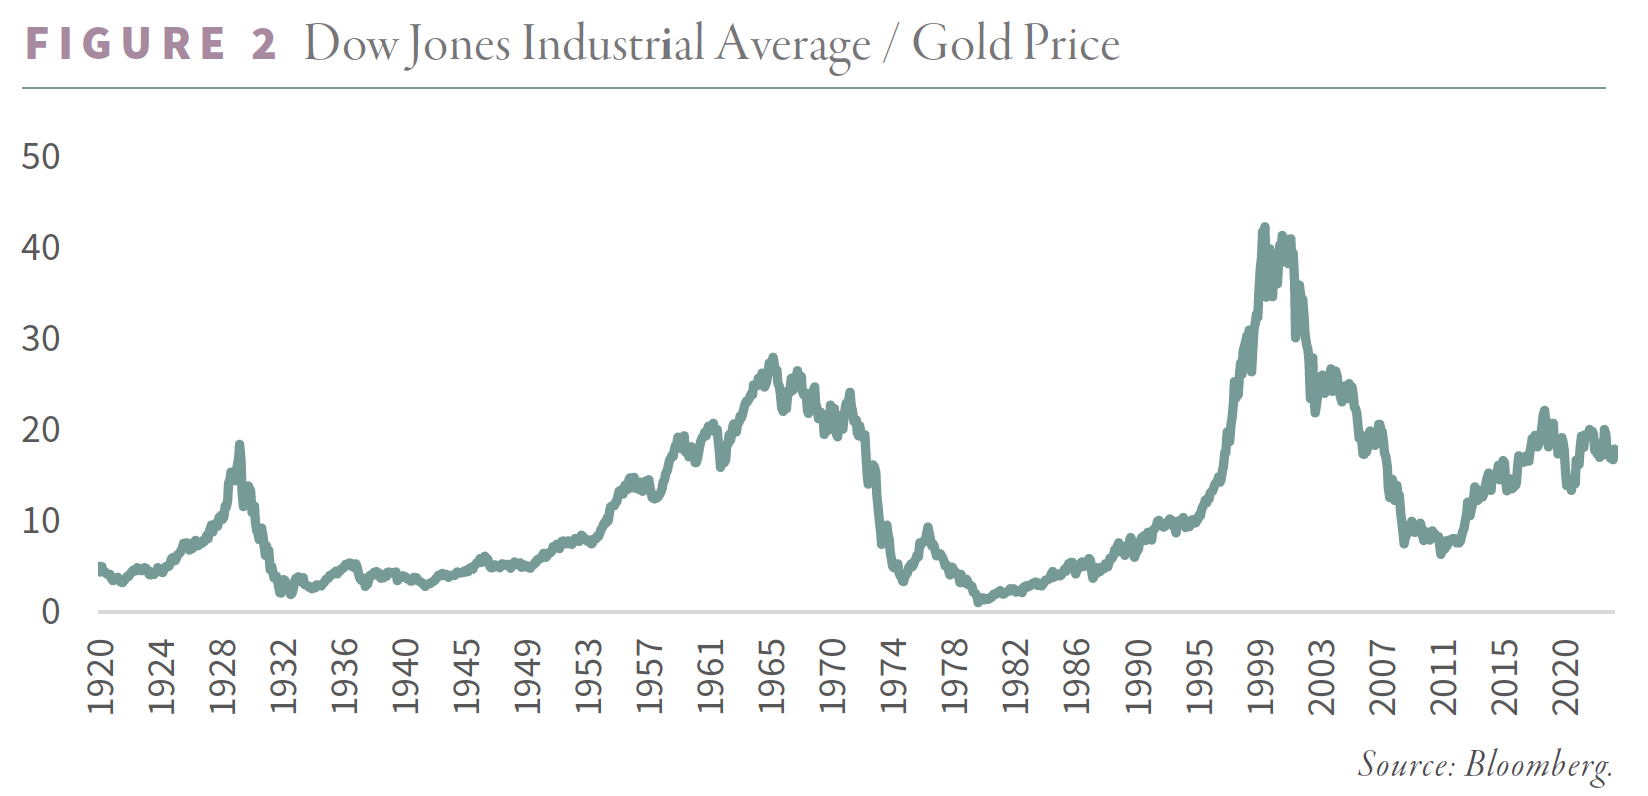 Dow Jones Industrial Average Gold Price - Figure 2